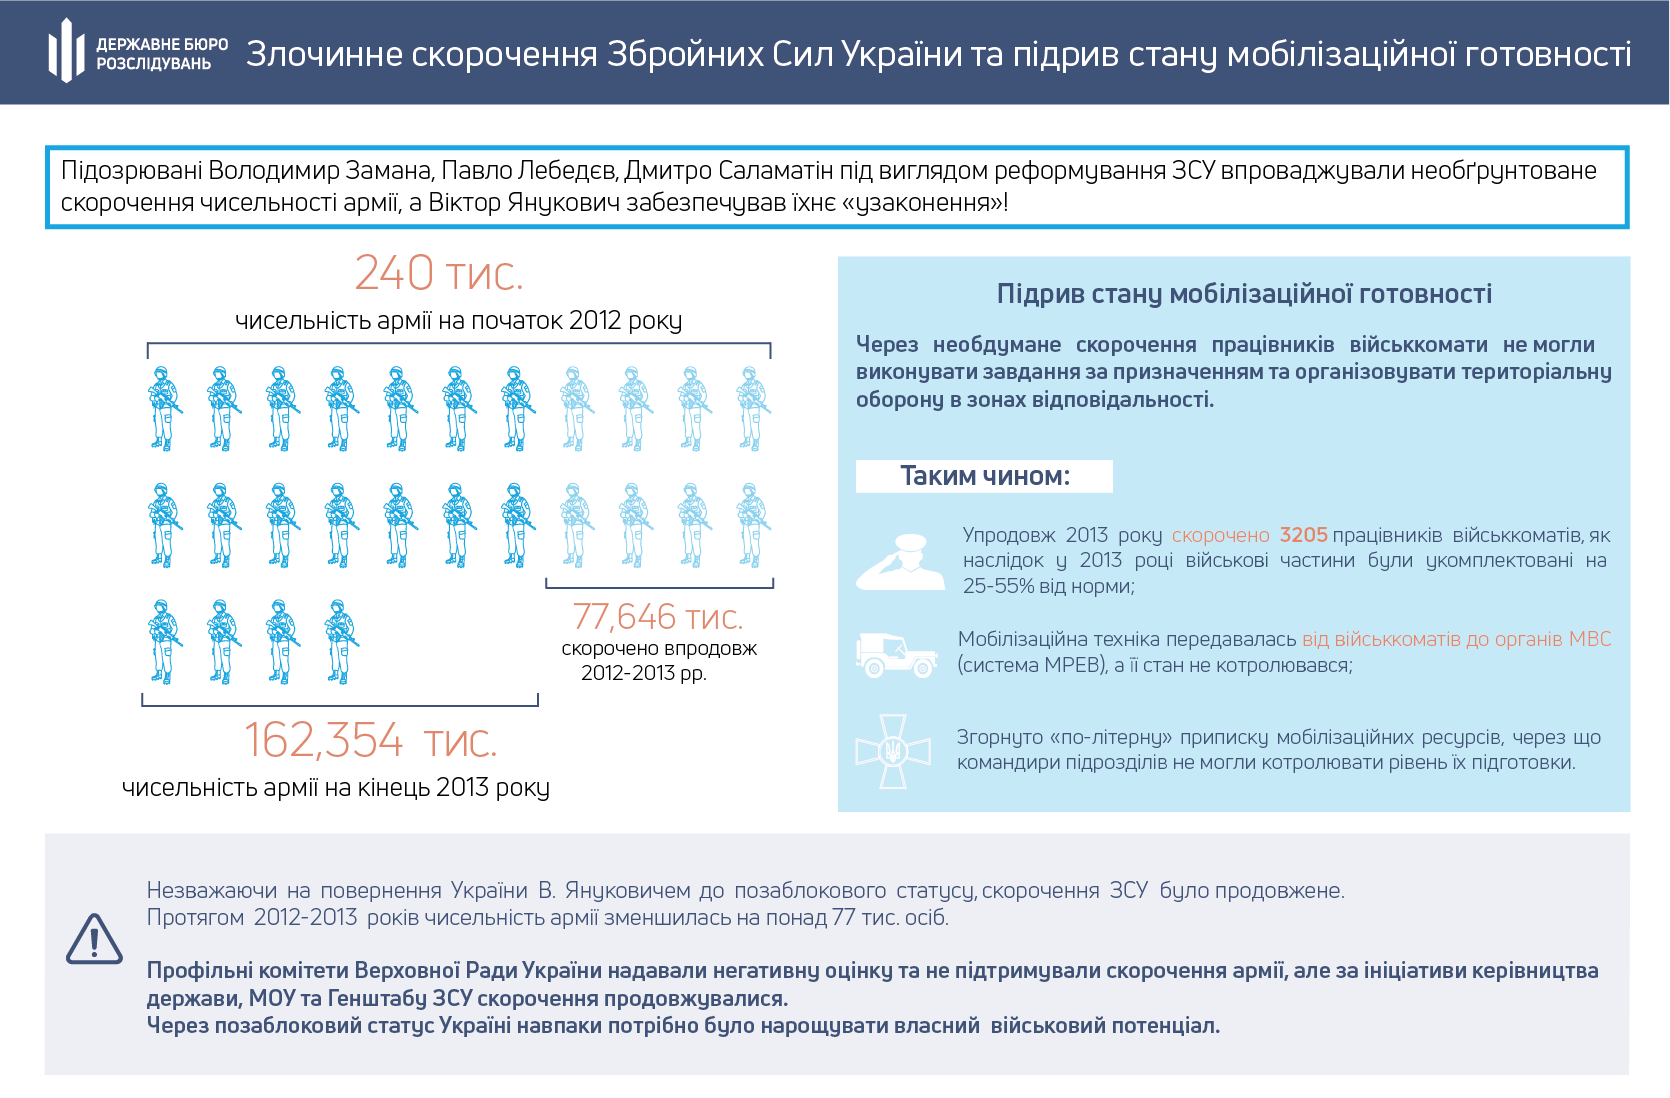 В ГБР рассказали, что позволило России аннексировать Крым. Инфографика - ГБР